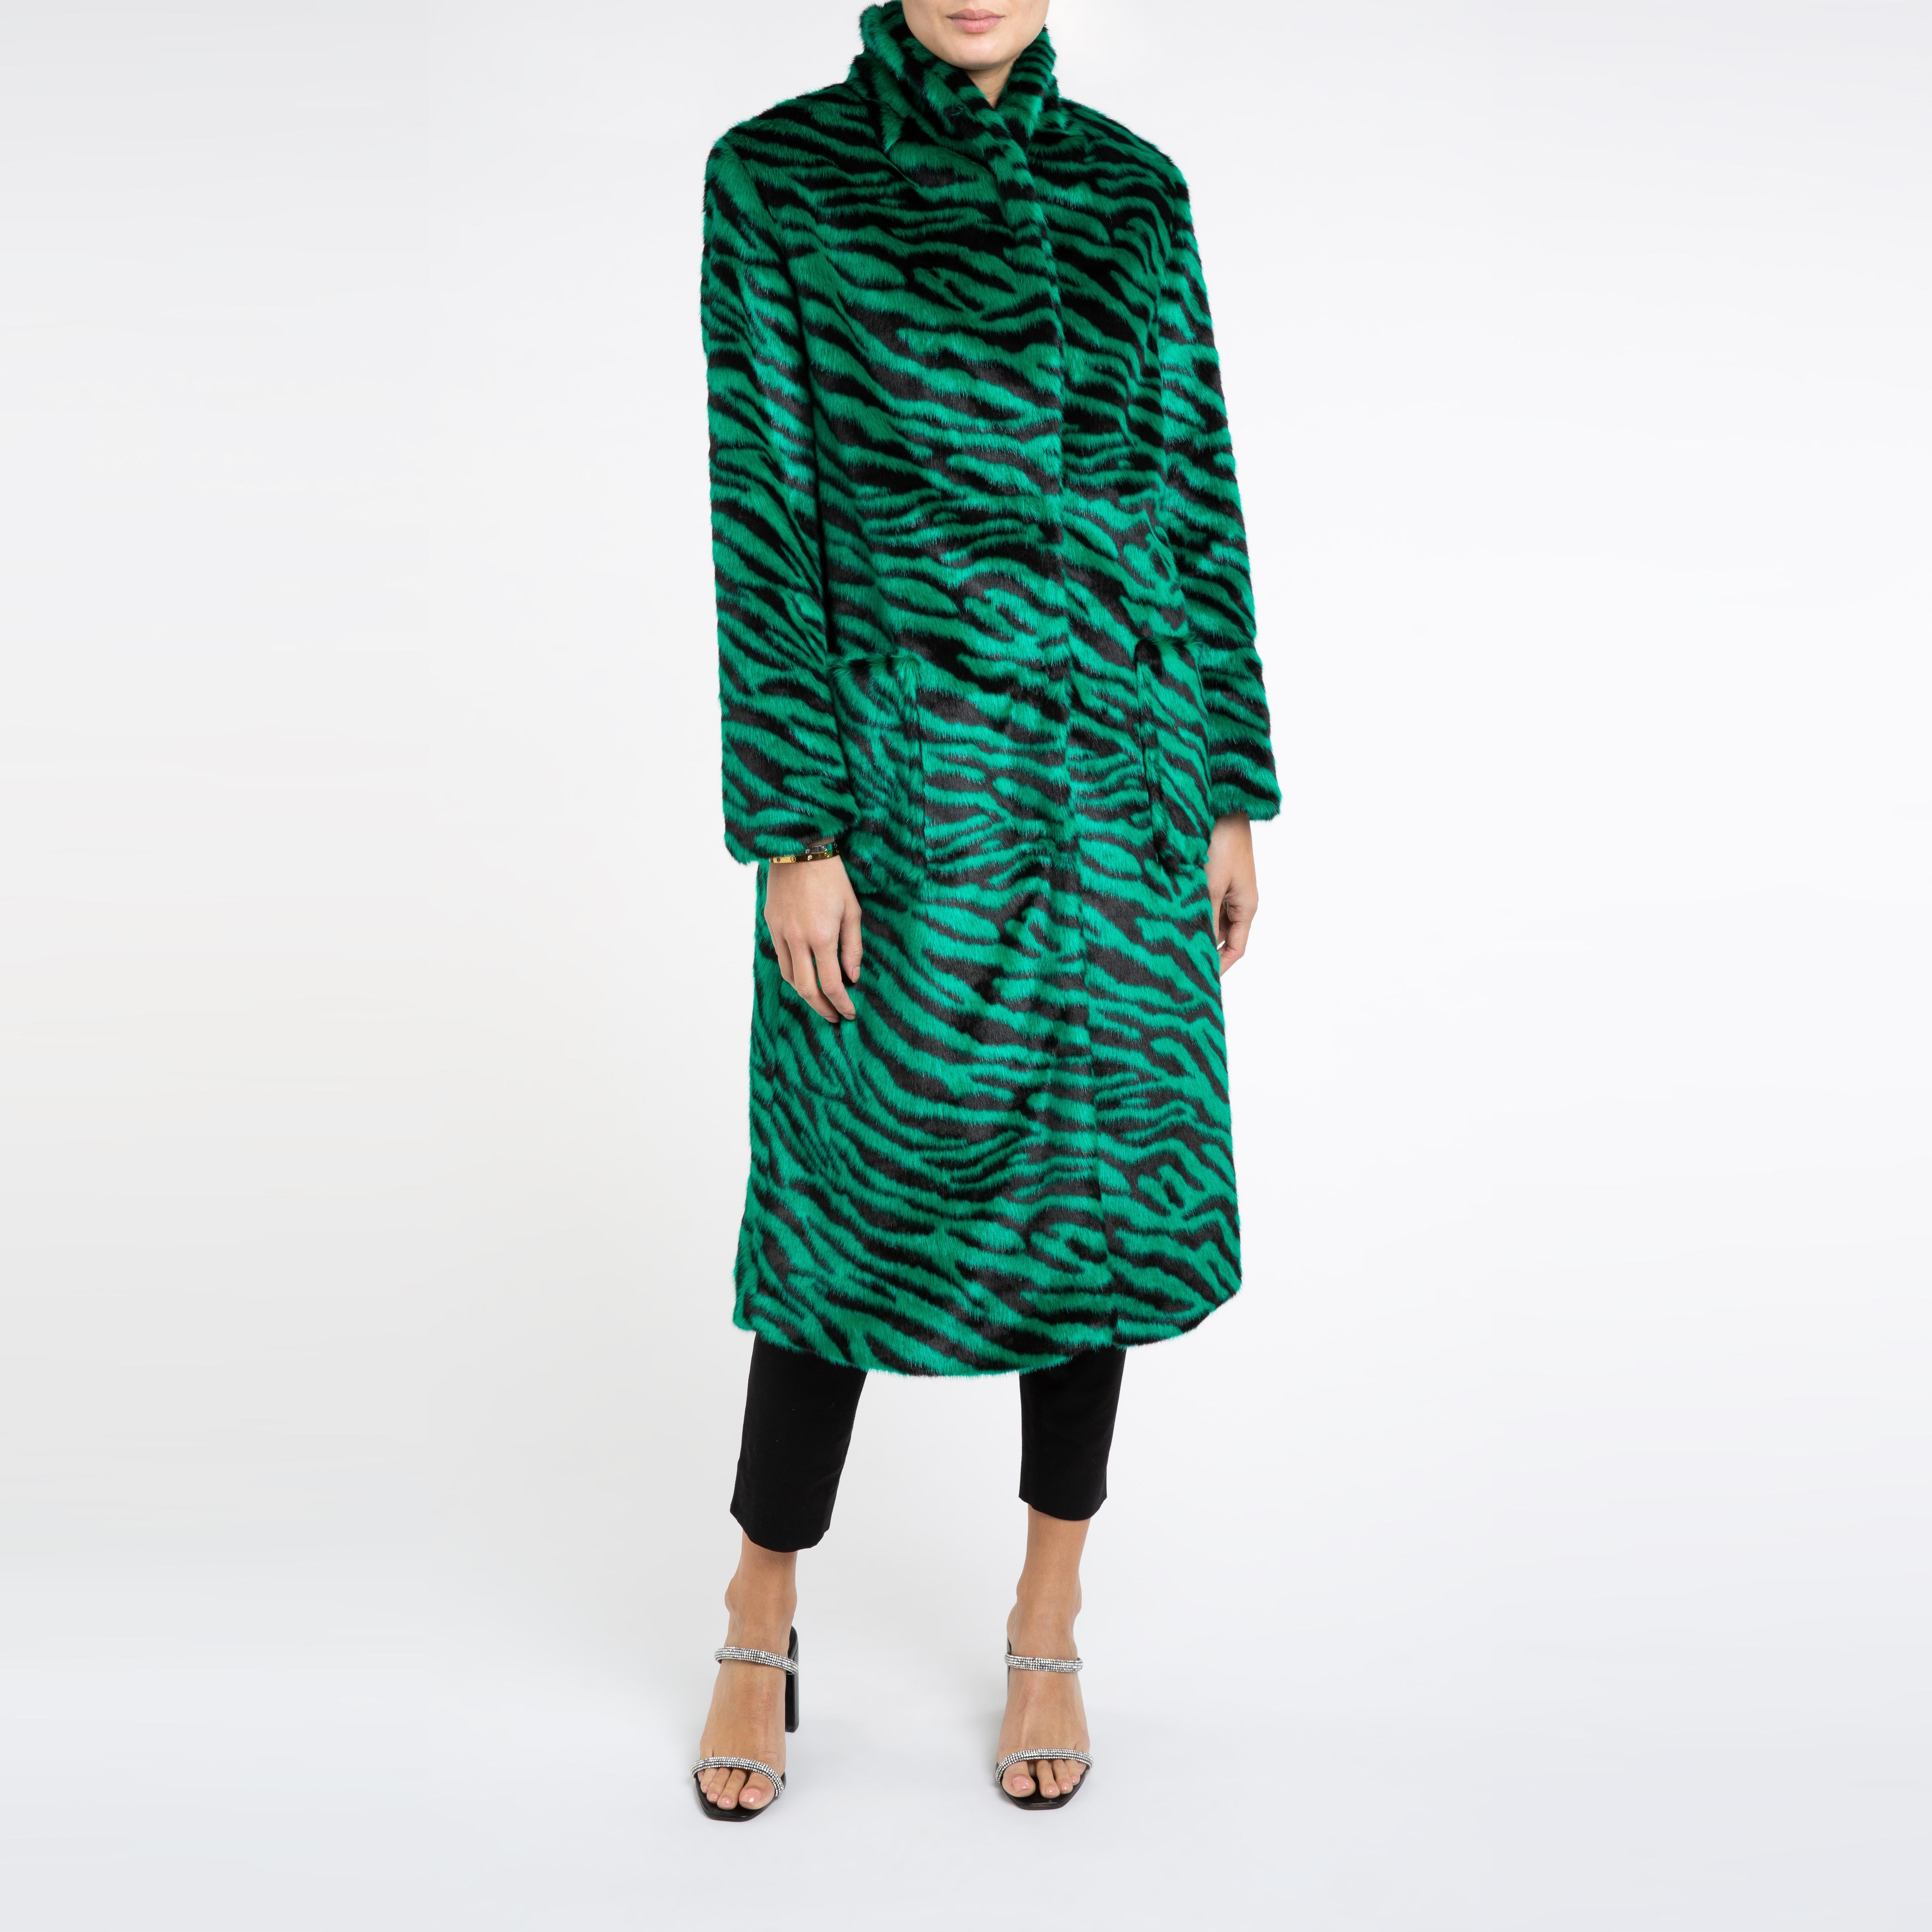 Verheyen London Esmeralda Faux Fur Coat in Emerald Green Zebra Print size uk 8 3